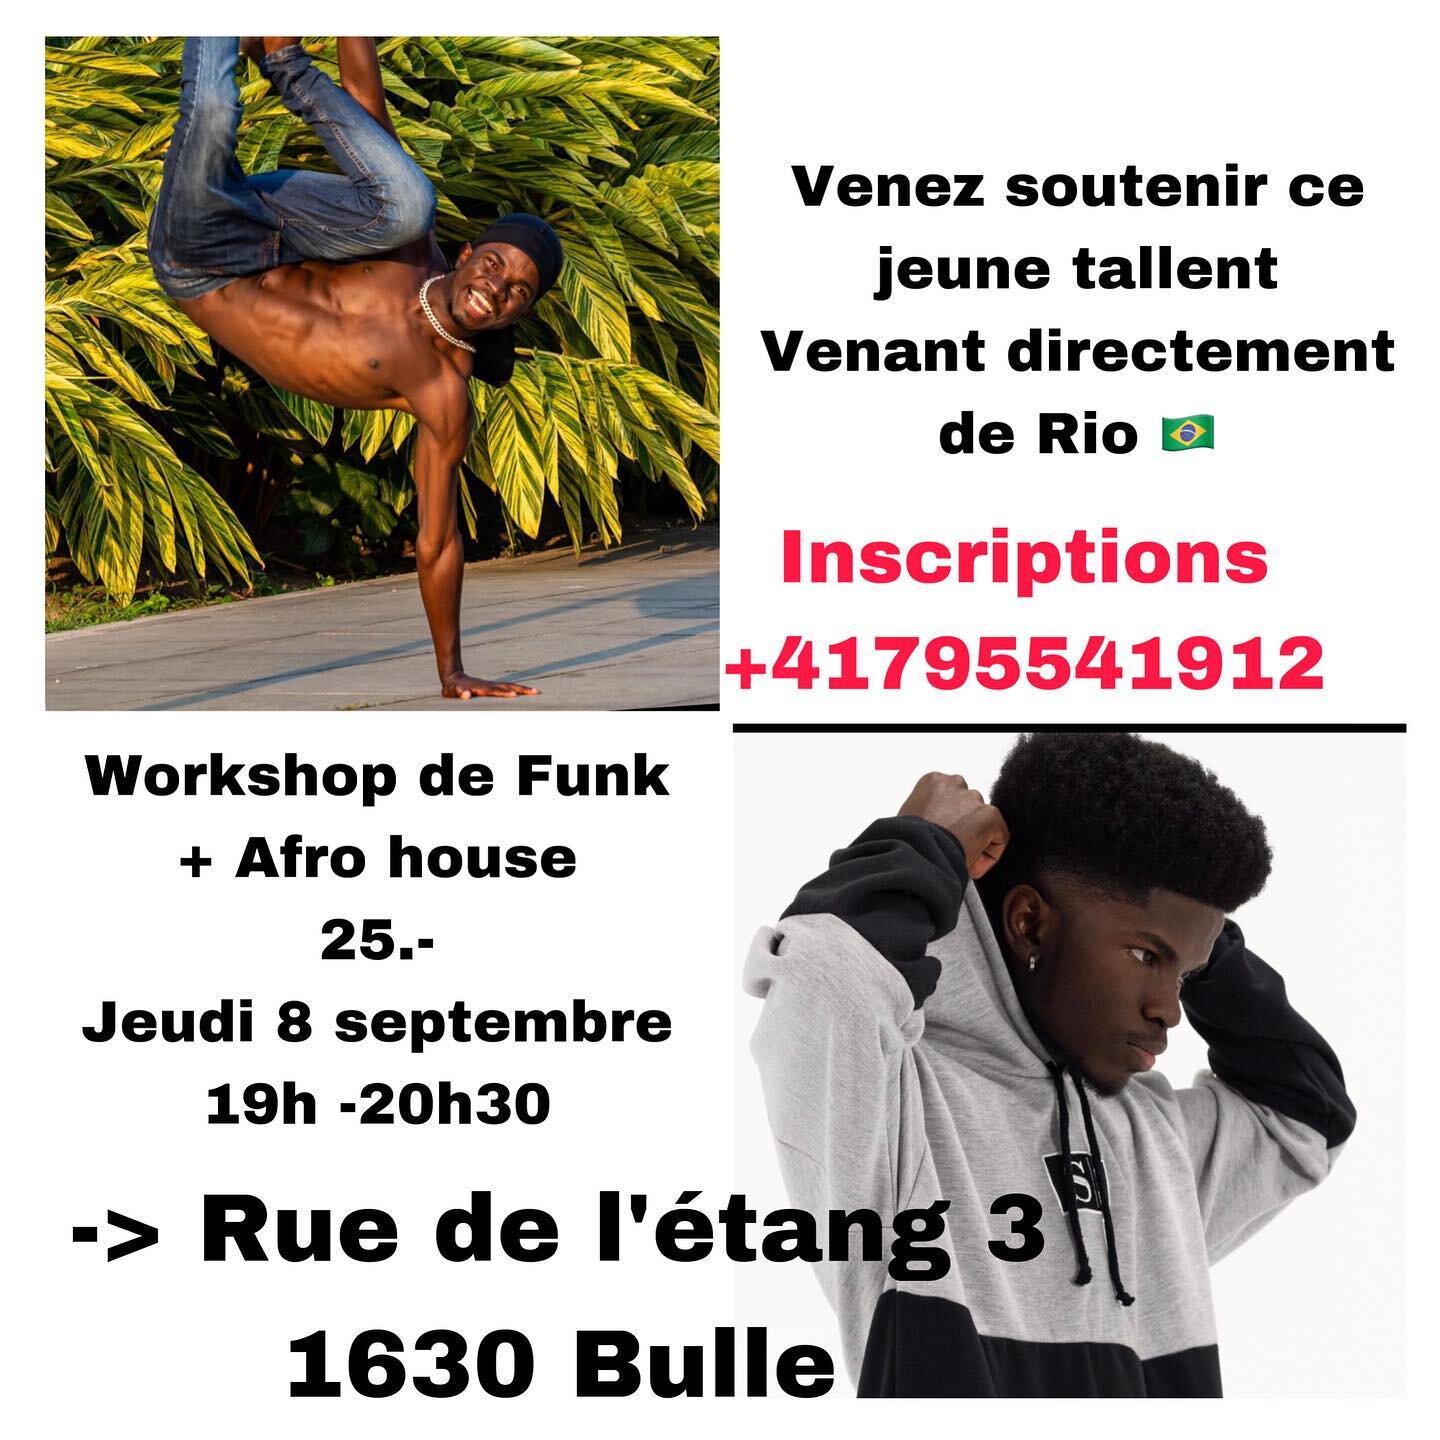 Workshop de Funk
+ Afro house
25.-
Jeudi 8 septembre
19h -20h30
Rue de l'&eacute;tang 3\
1630 Bulle ********Il restent encore quelques places! Alors inscrivez-vous au plus vite au +41795541912